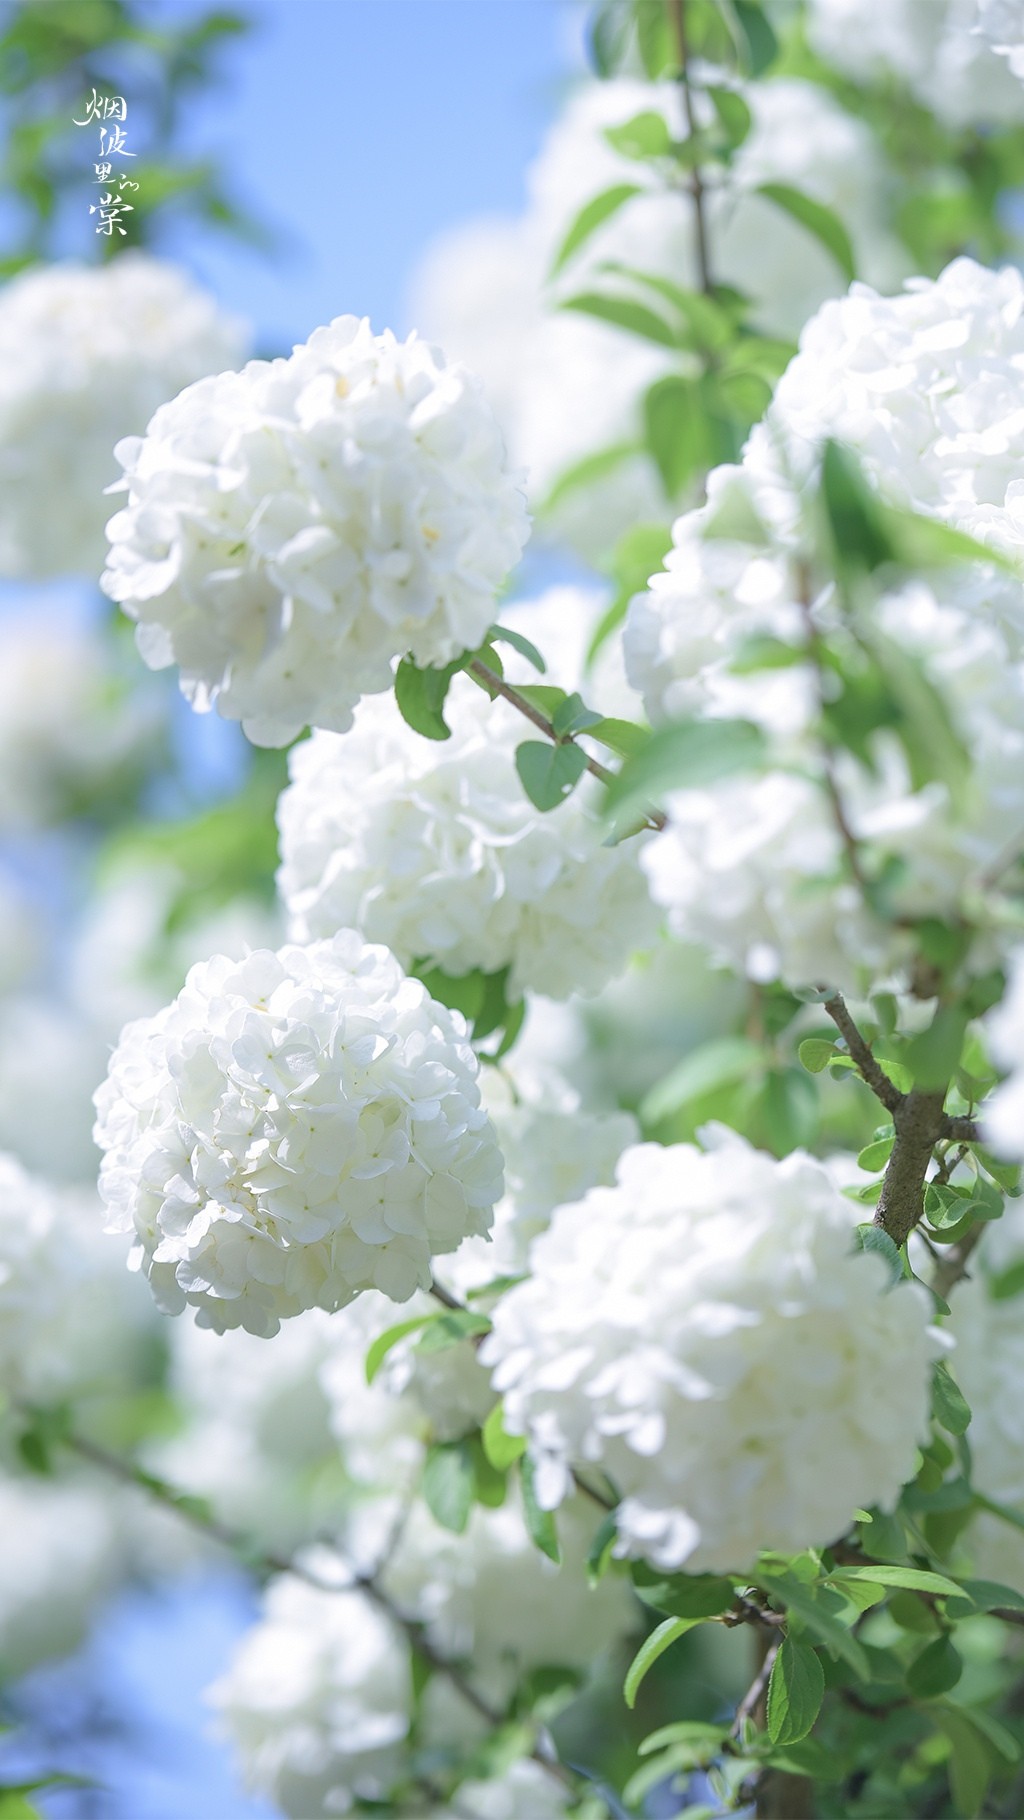 白色木绣球花唯美背景手机壁纸 植物 靓丽图库